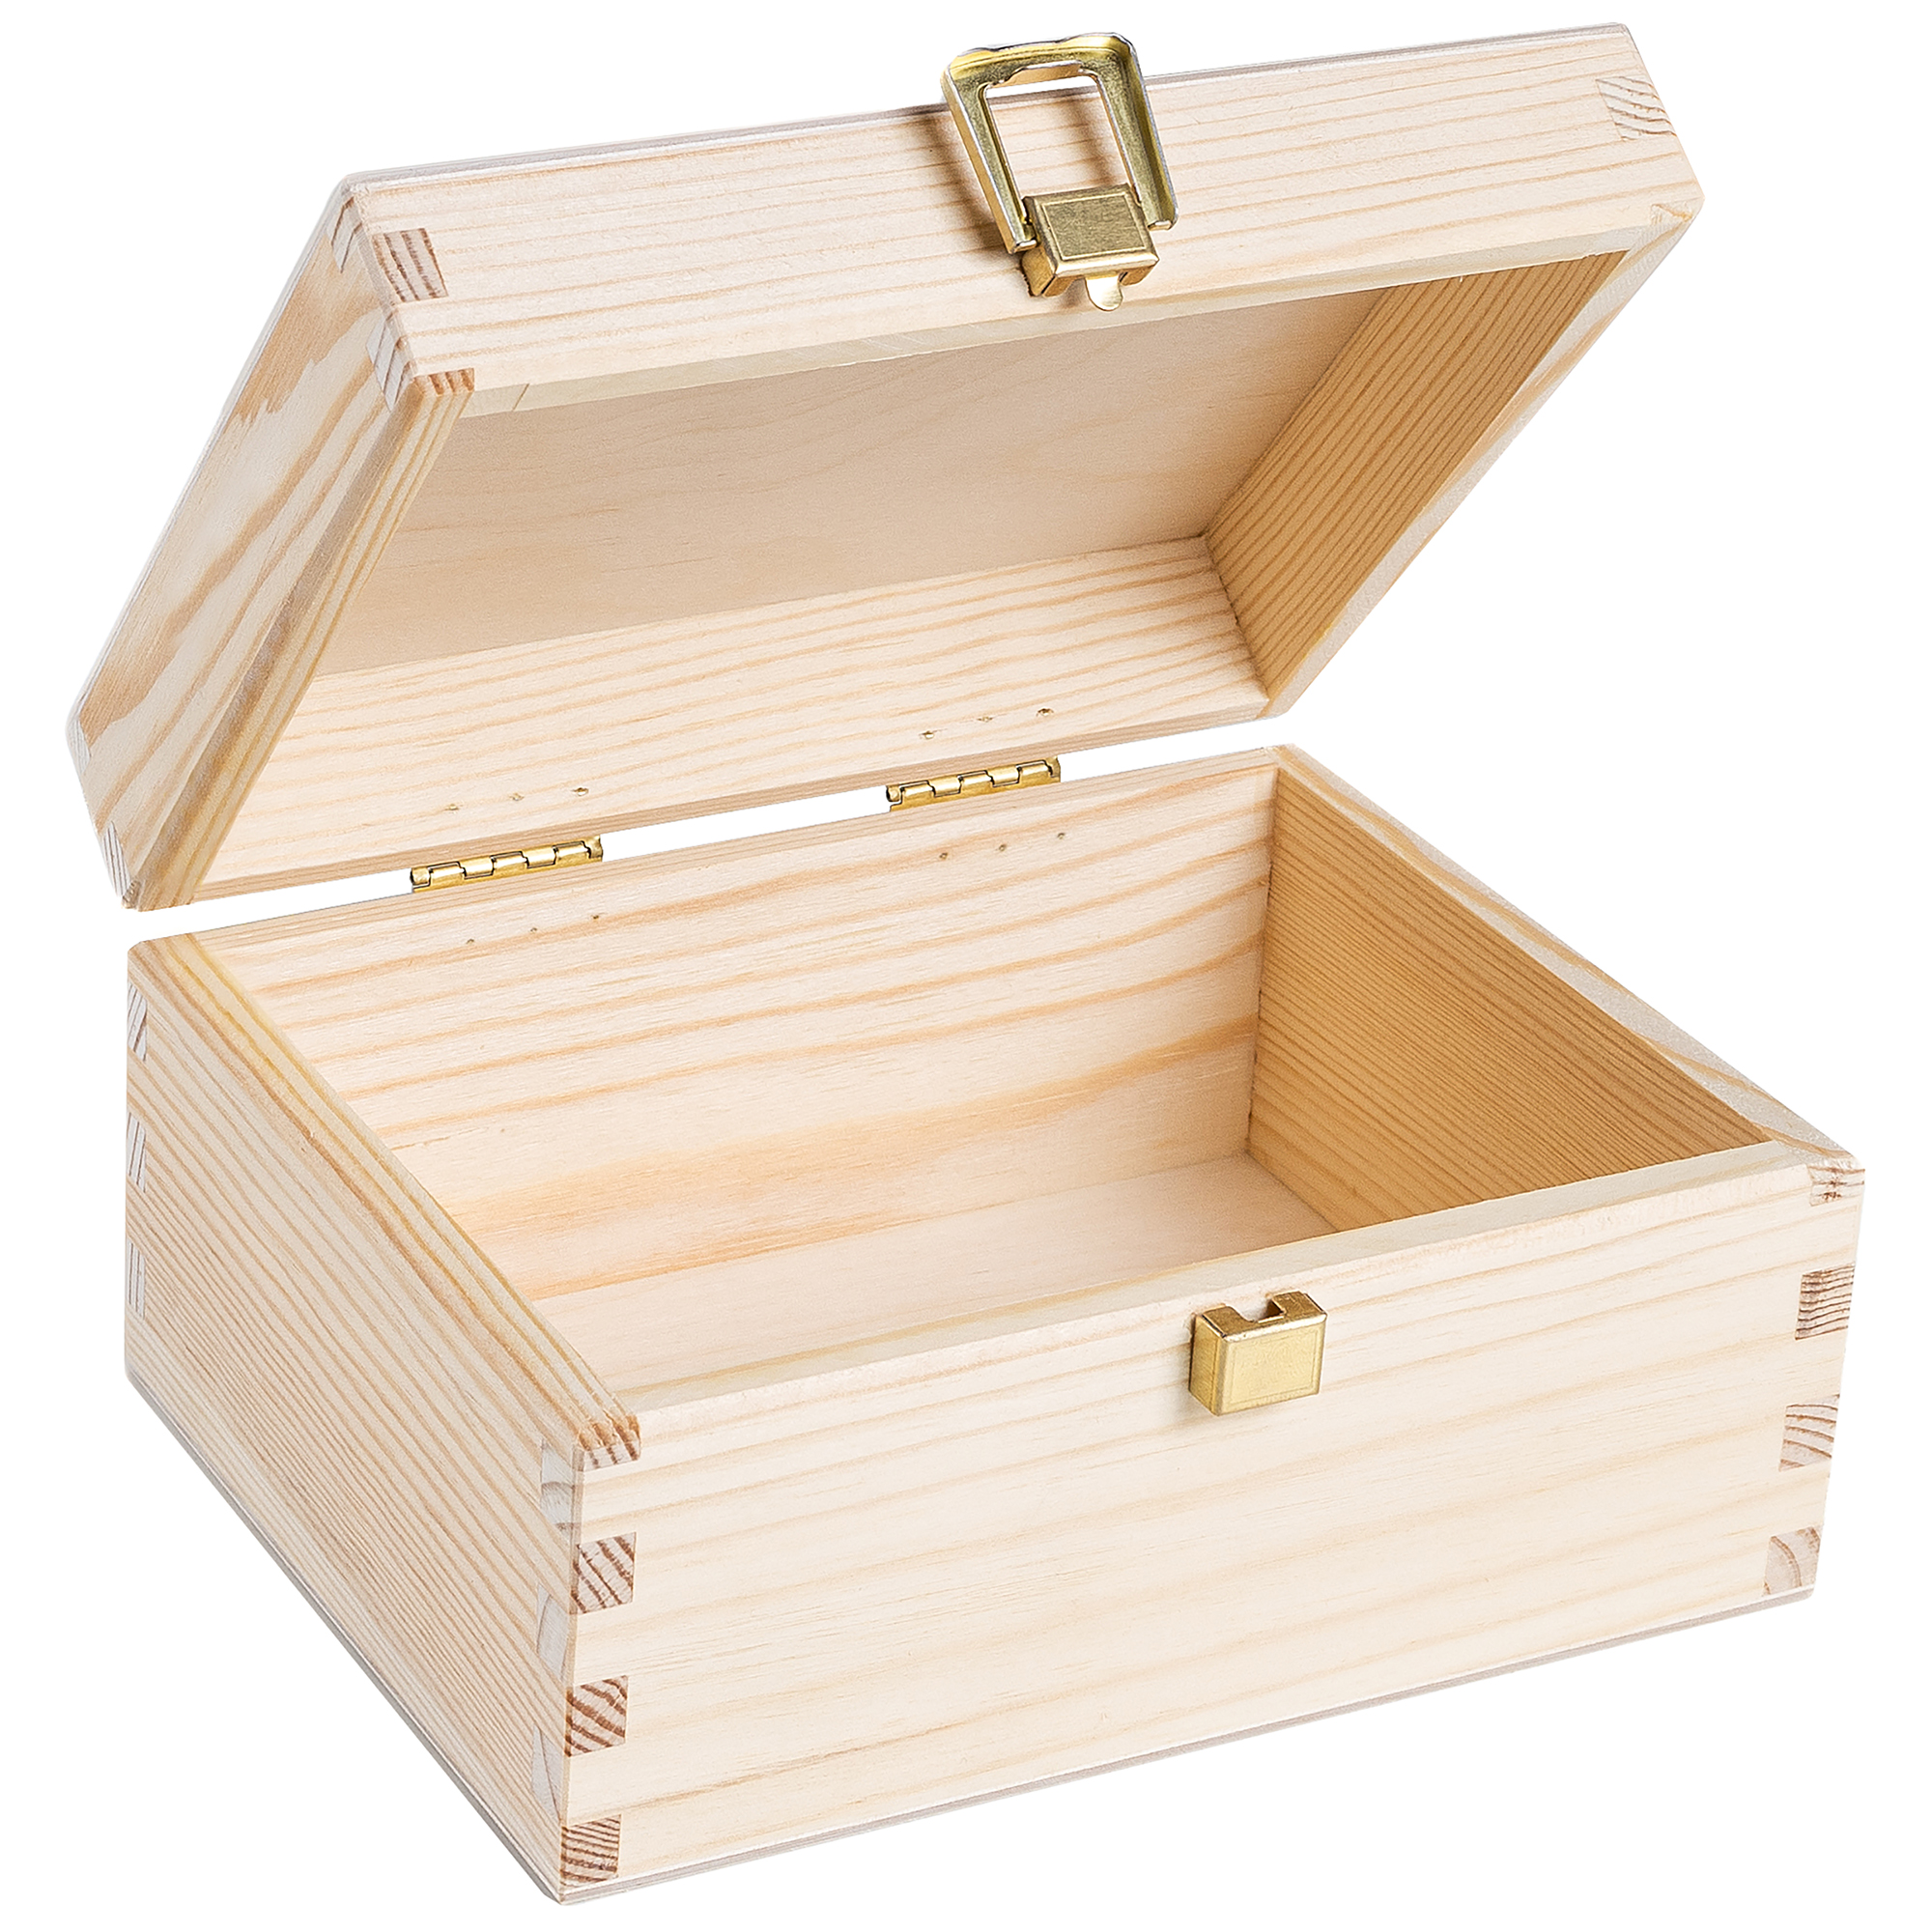 Petite boîte bois rangement montre, petite boîte présentation vitrée